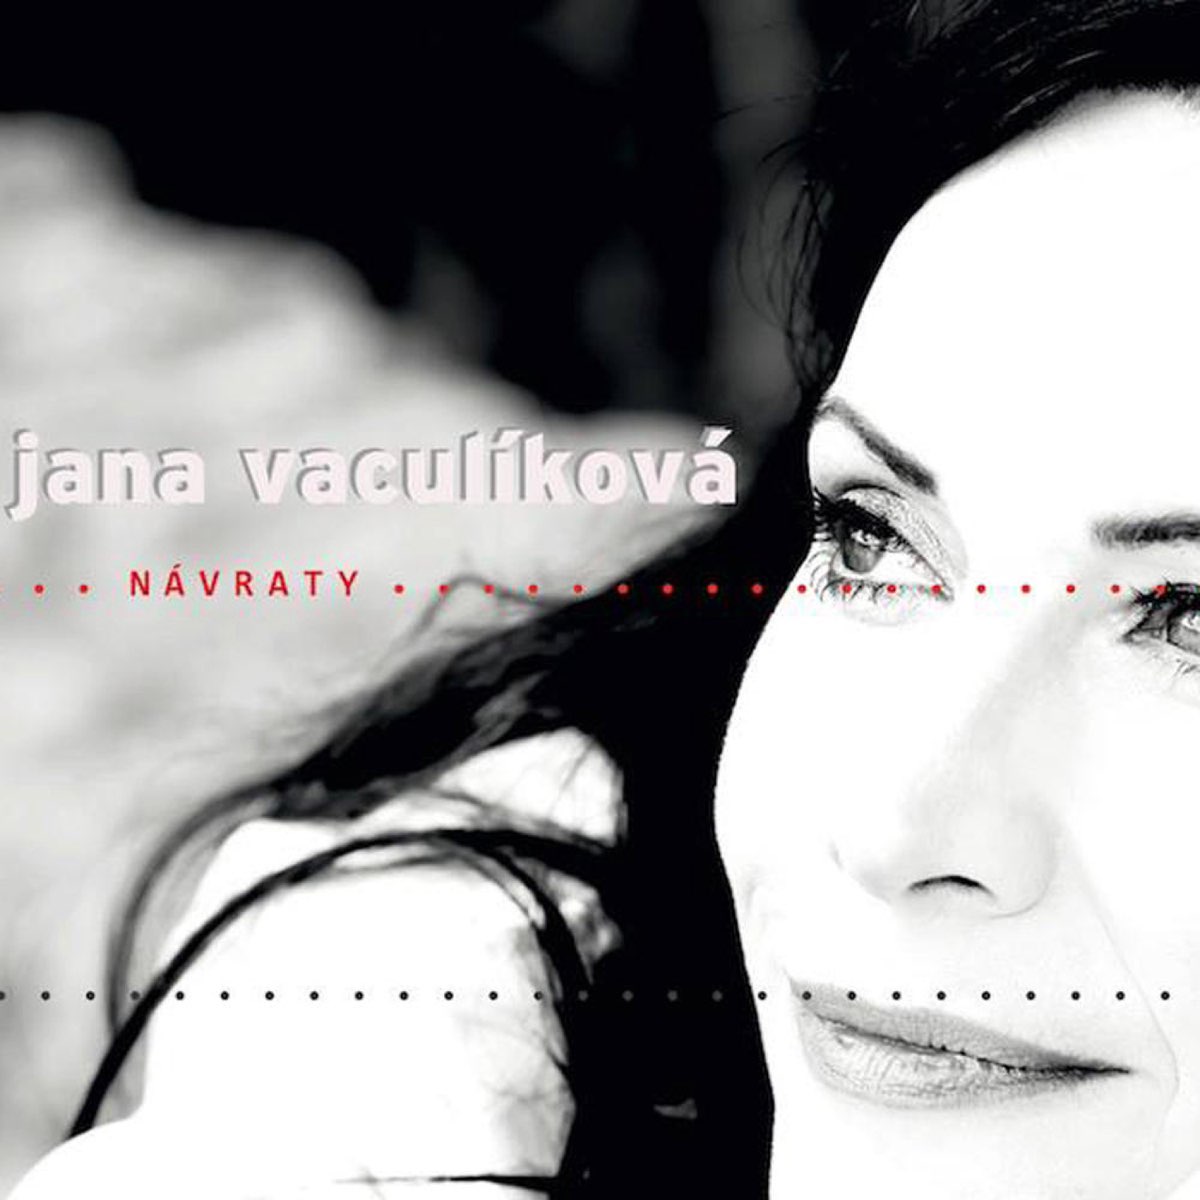 Návraty - Album by Jana Vaculíková - Apple Music